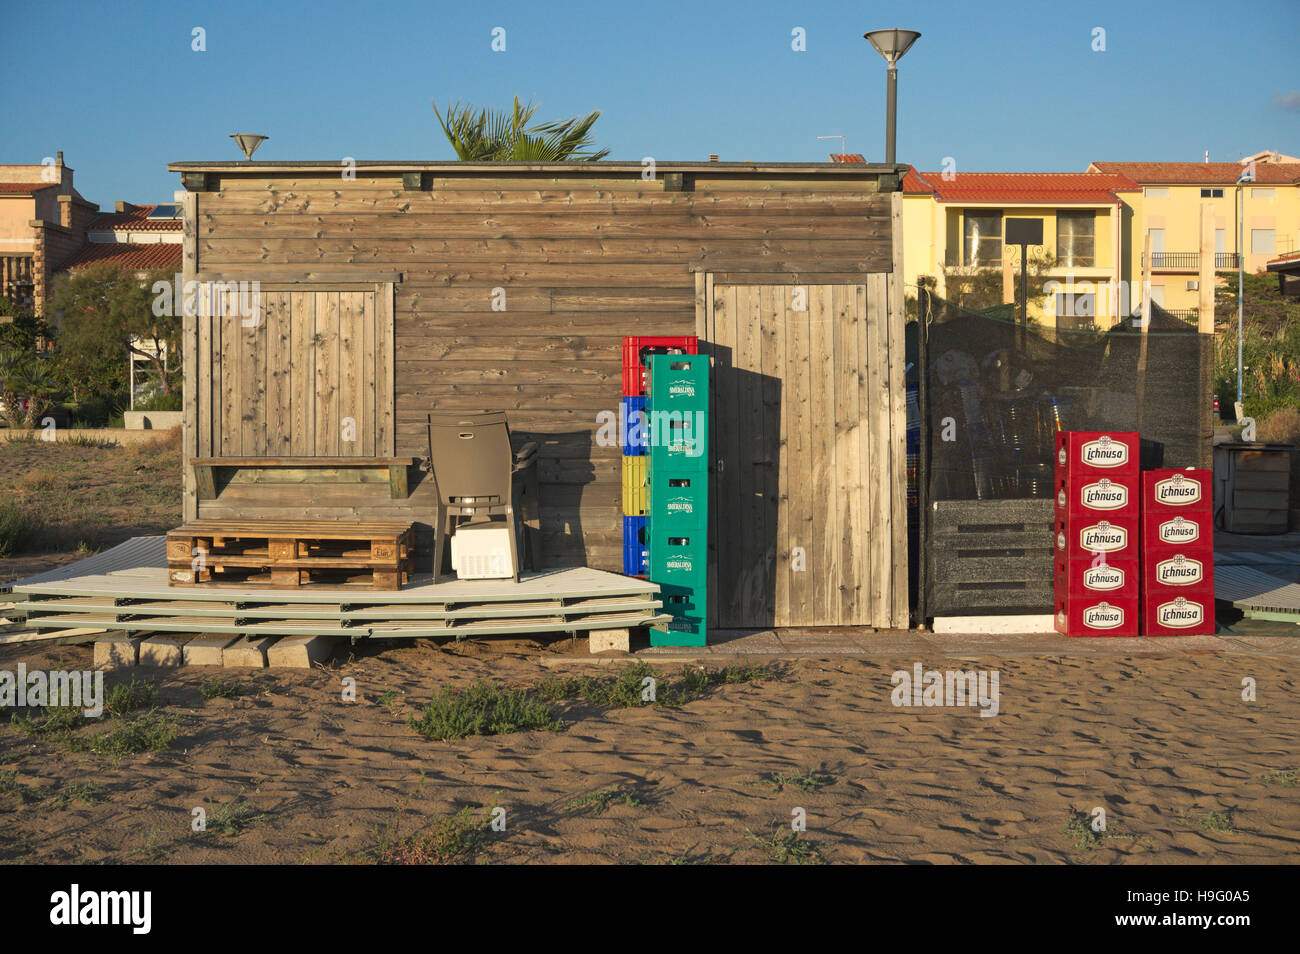 A closed beach cafe in Bosa Marina, Sardinia, Italy Stock Photo